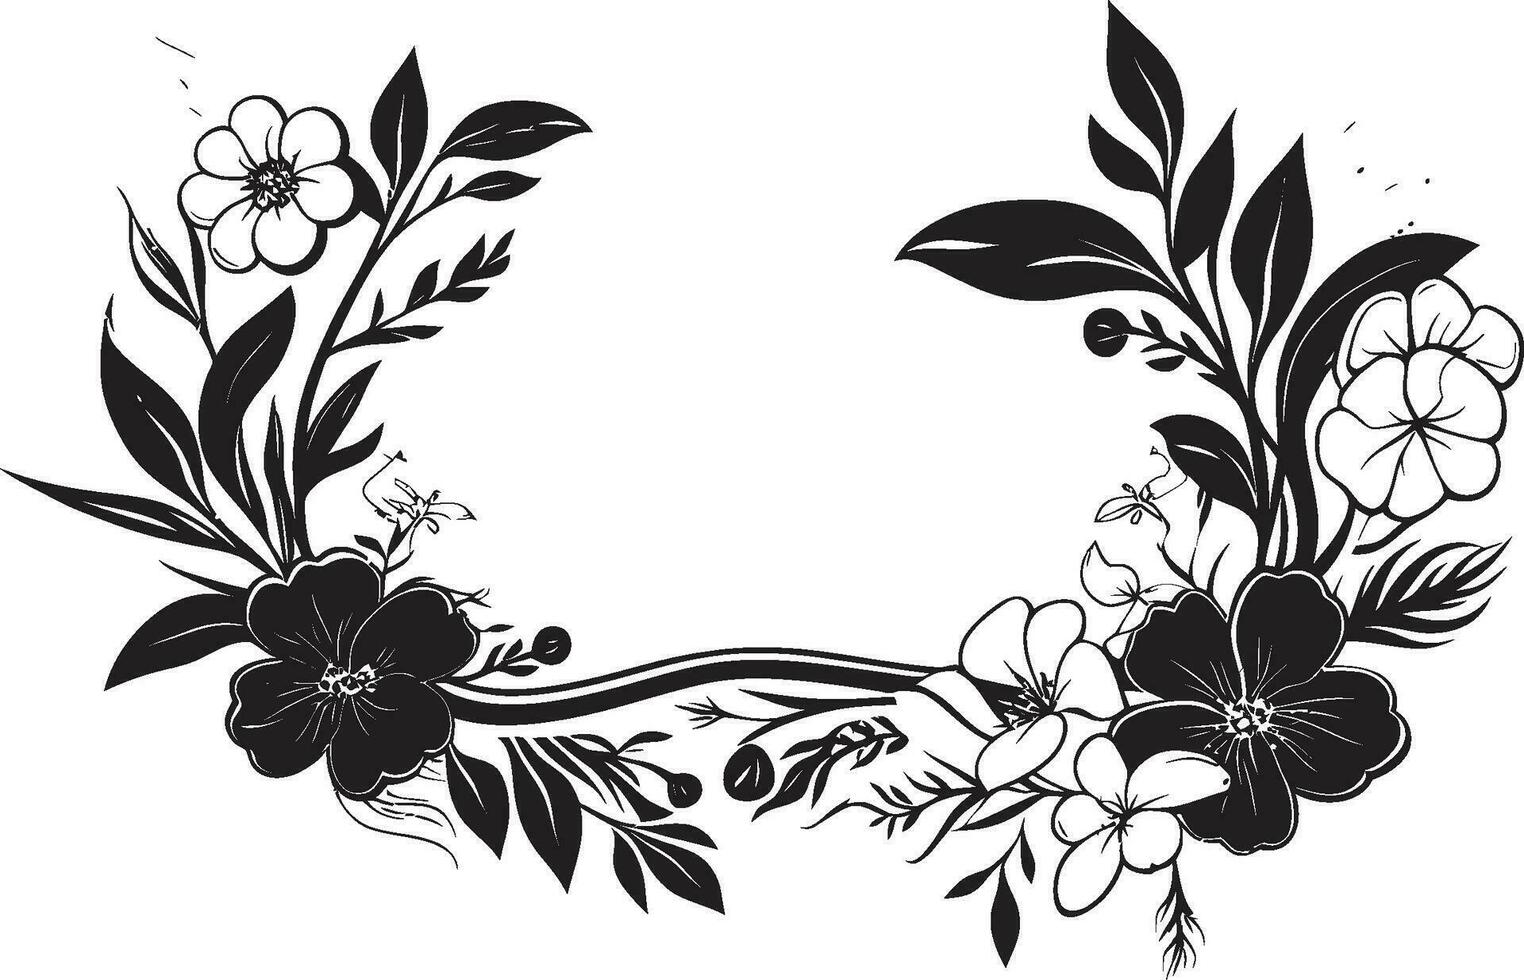 sofisticato mezzanotte floreale allegato vettore emblema capriccioso botanico telaio nero floreale design